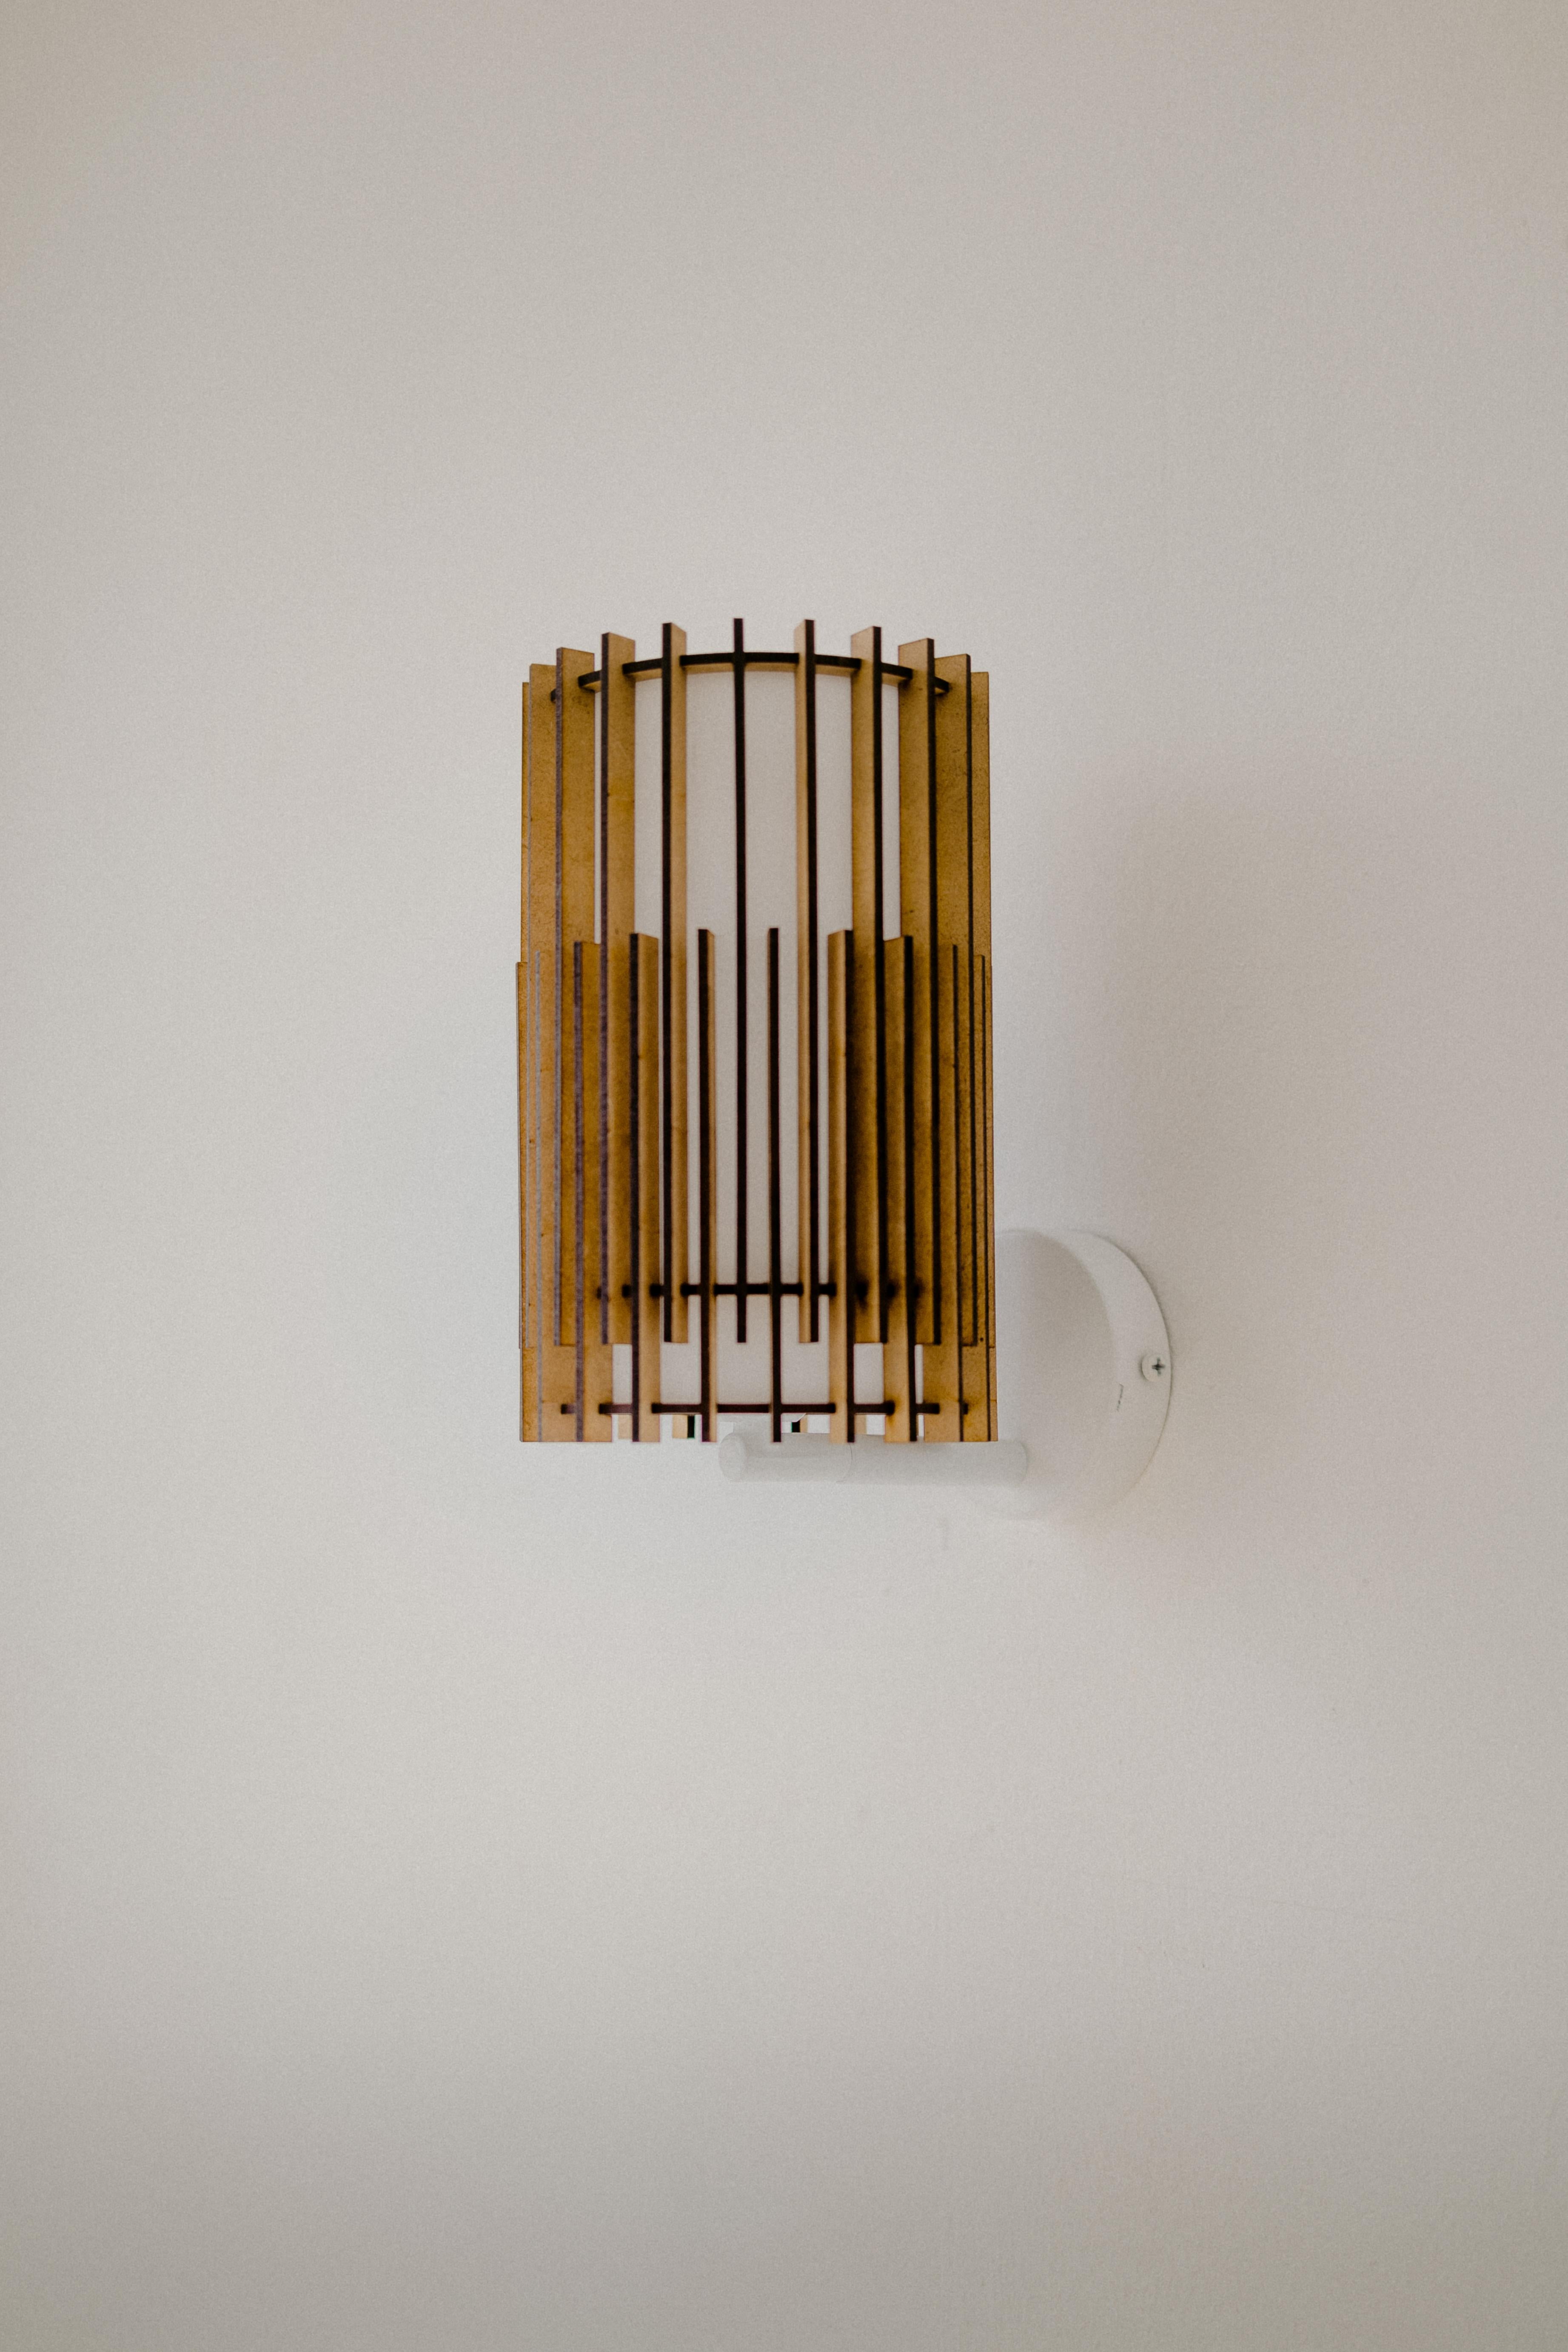 Les lampes SUAU sont conçues et fabriquées par Mediterranean Objects à Barcelone, en Espagne. 

Elles sont dotées d'un abat-jour extérieur composé de lattes de bois MDF, découpées au laser et assemblées une à une, créant ainsi deux textures